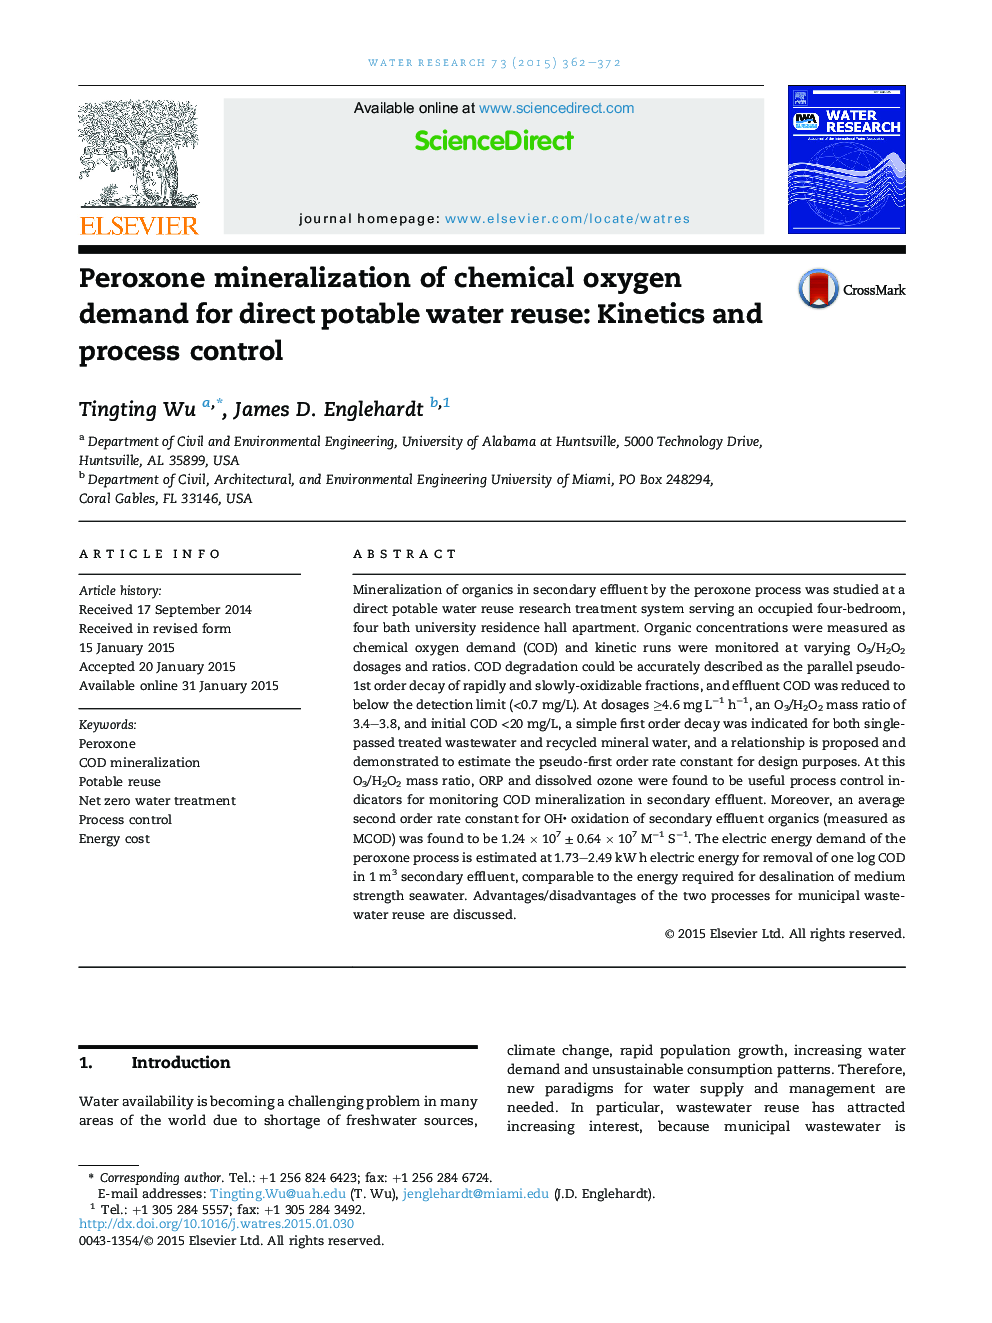 پراکسون کانی سازی نیاز مصرف اکسیژن شیمیایی برای استفاده مجدد آب آشامیدنی مستقیم: سینتیک و کنترل فرآیند 